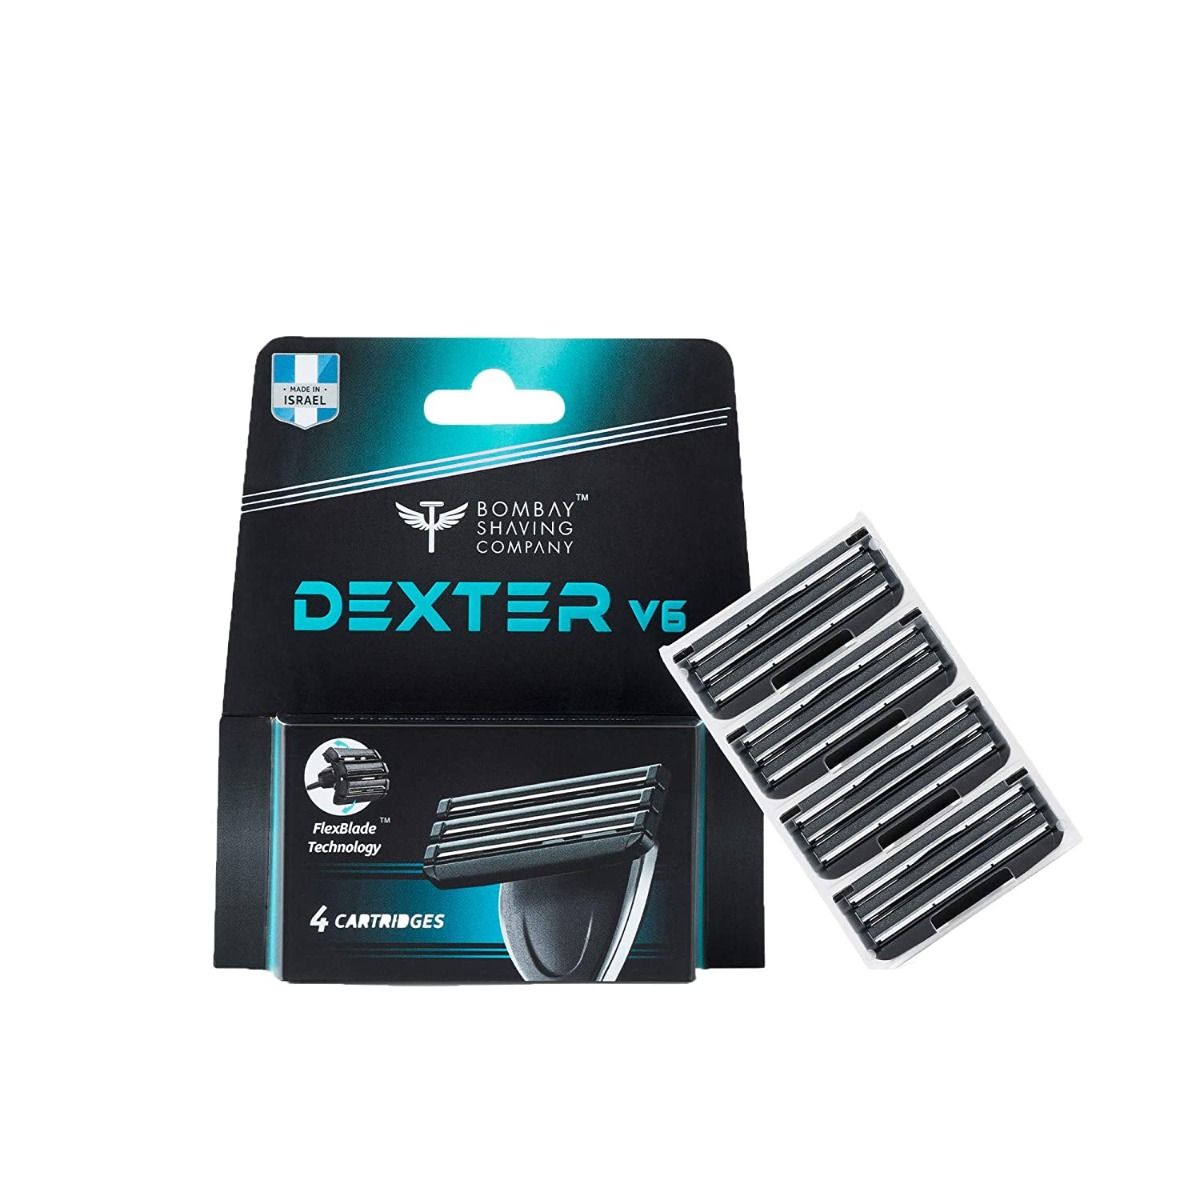 Bombay Shaving Company Dexter V6 Razor Regular Cartridges (Pack of 4) - Niram